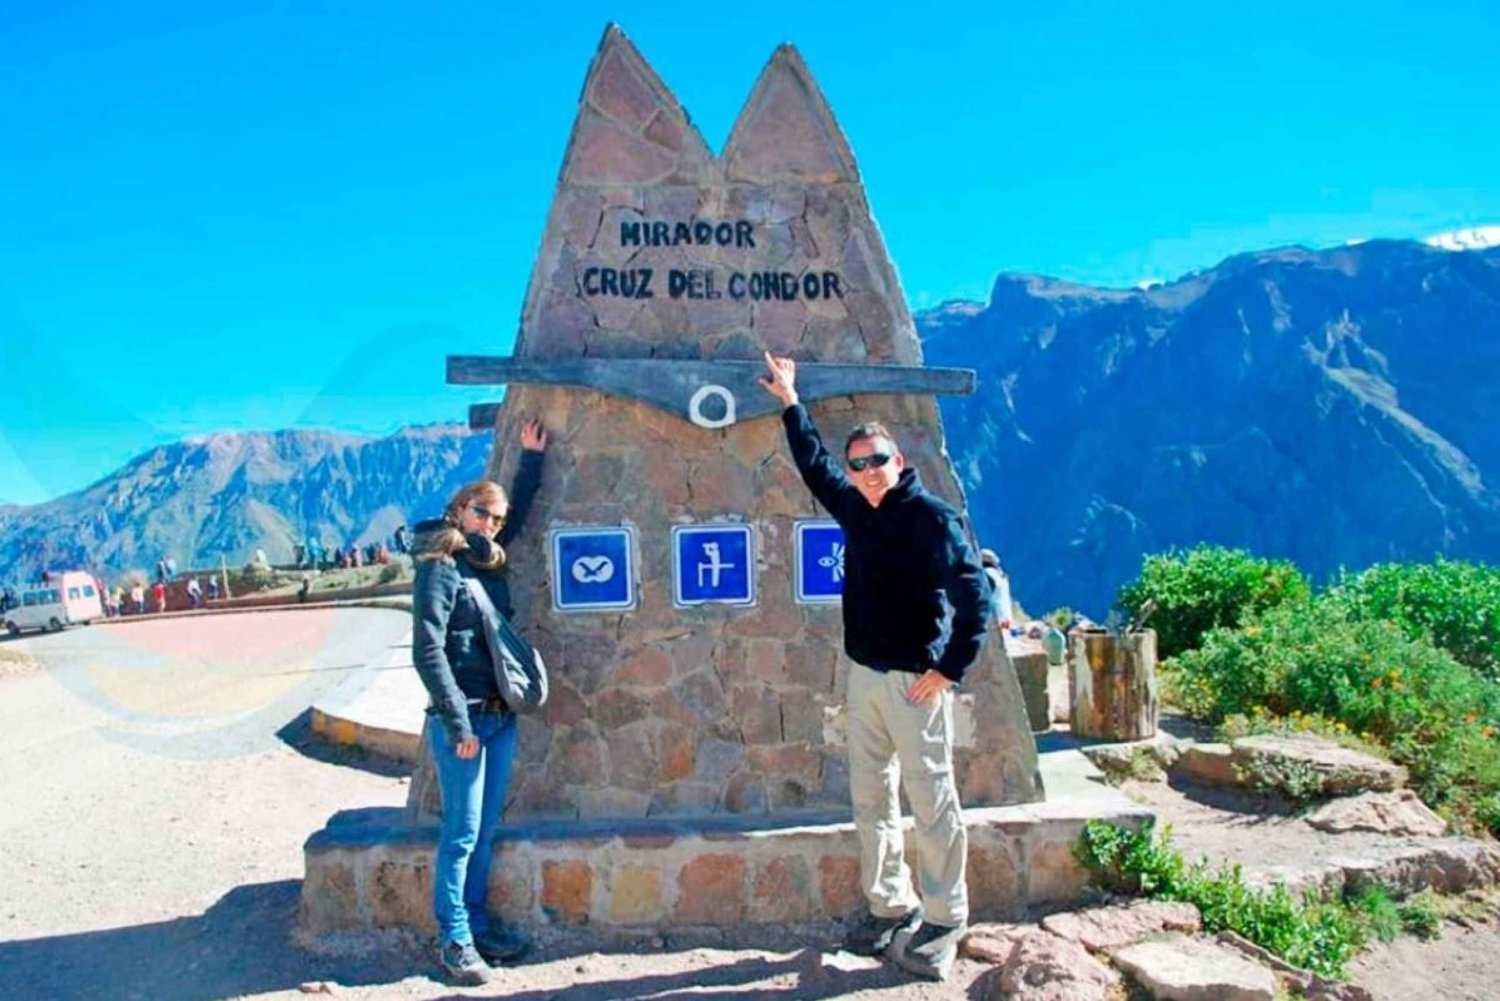 Arequipa: Udflugt til Colca Canyon, mulighed for at slutte i Puno